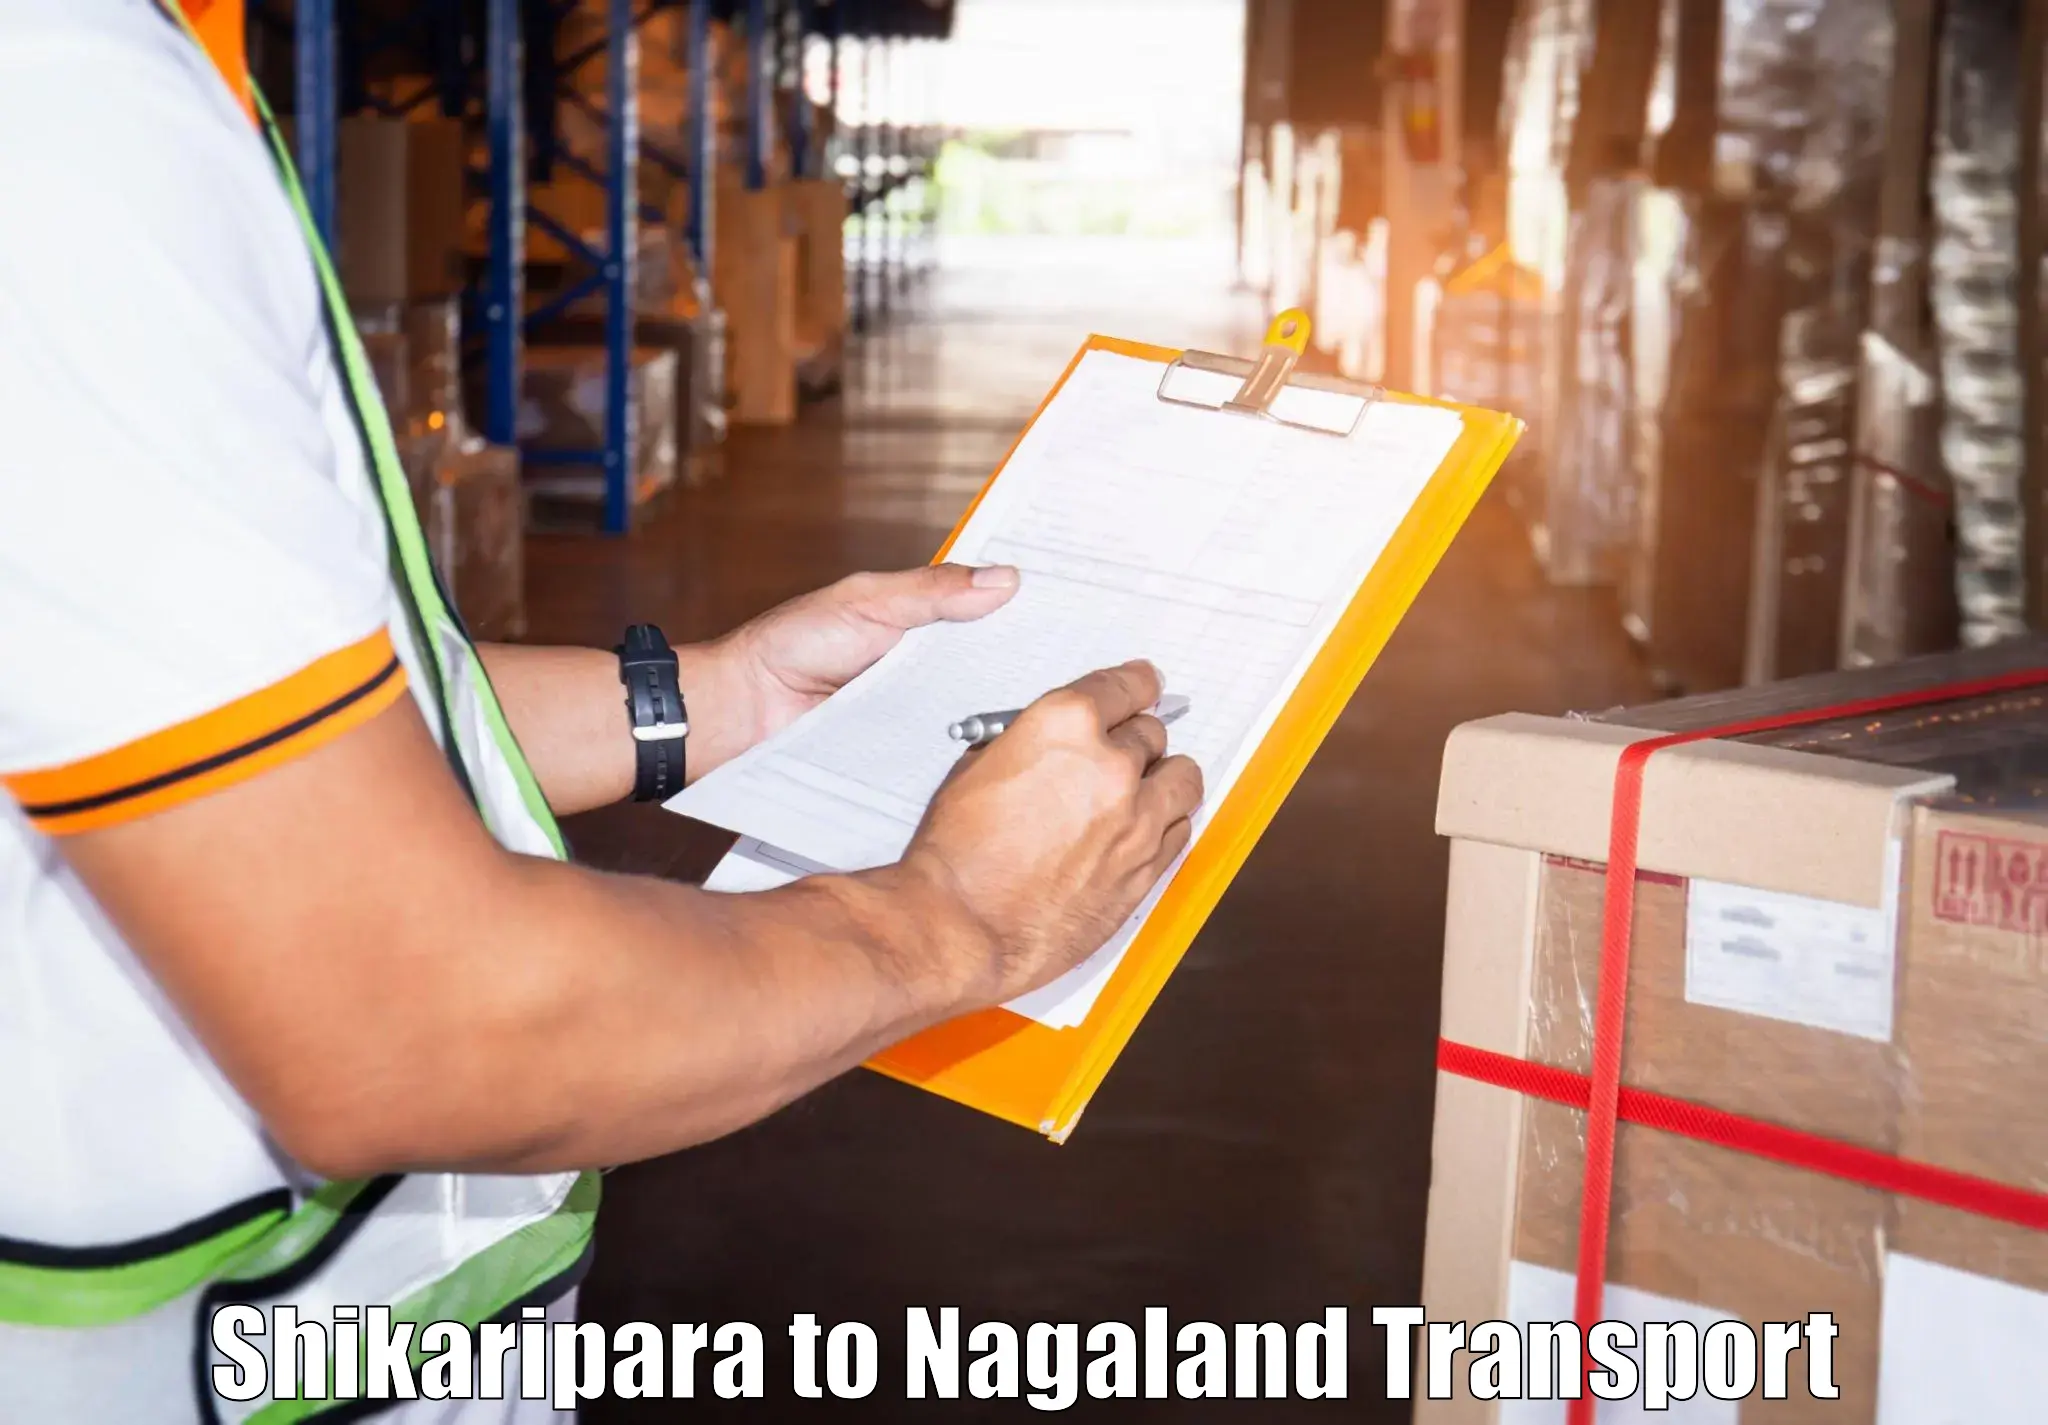 Nearby transport service Shikaripara to Nagaland